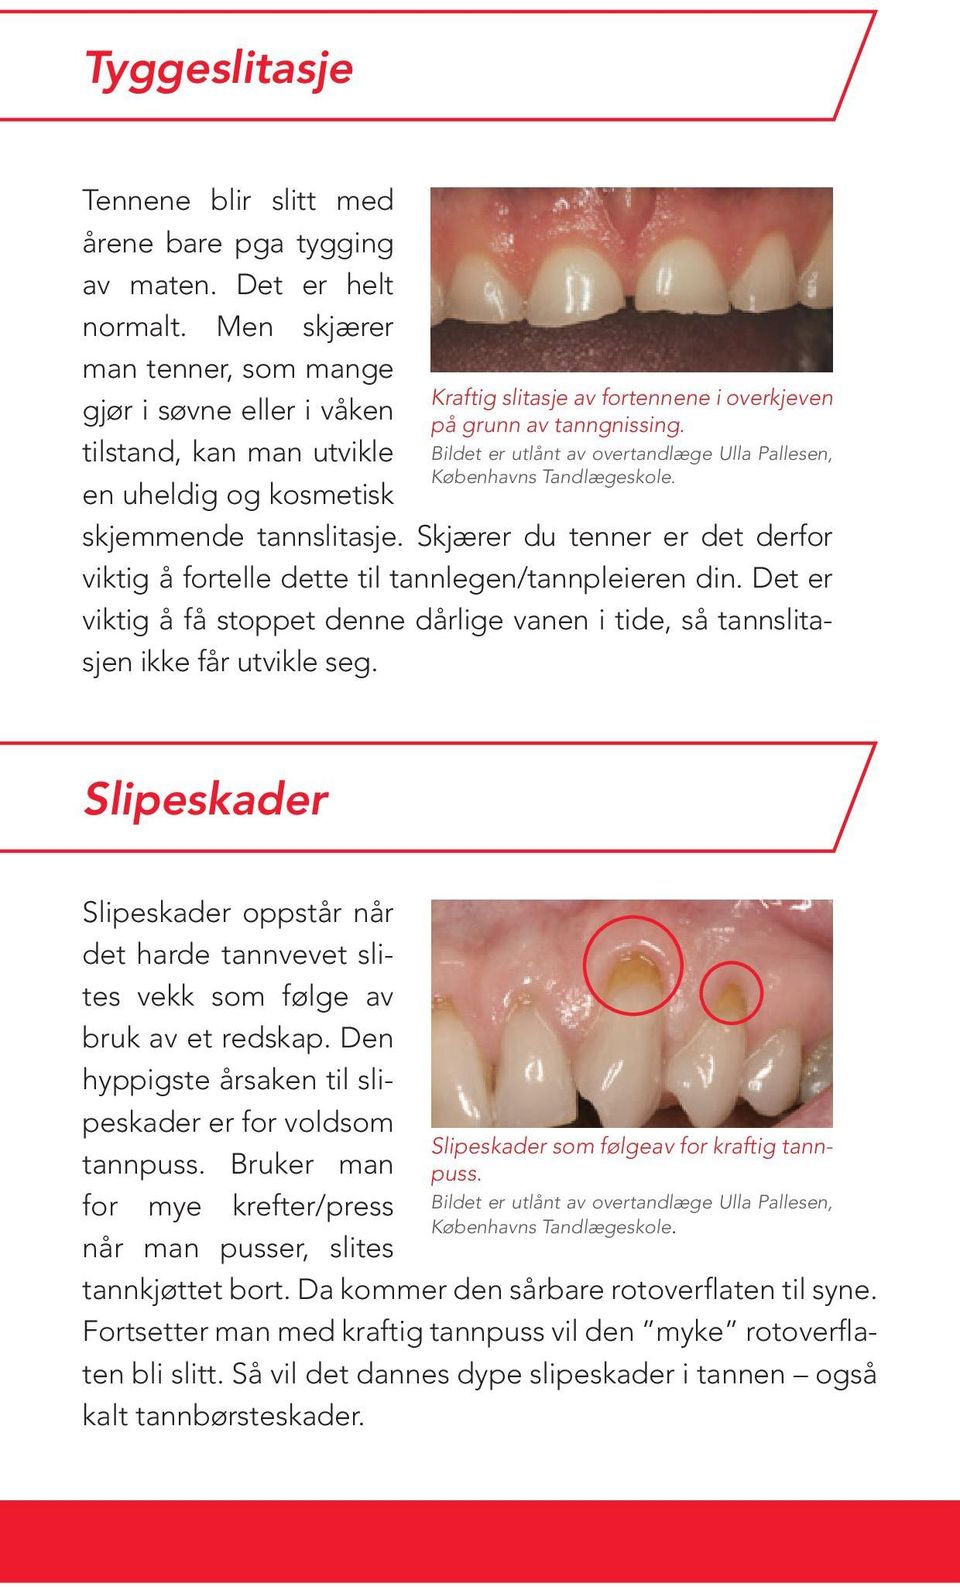 Bildet er utlånt av overtandlæge Ulla Pallesen, Københavns Tandlægeskole. skjemmende tannslitasje. Skjærer du tenner er det derfor viktig å fortelle dette til tannlegen/tannpleieren din.